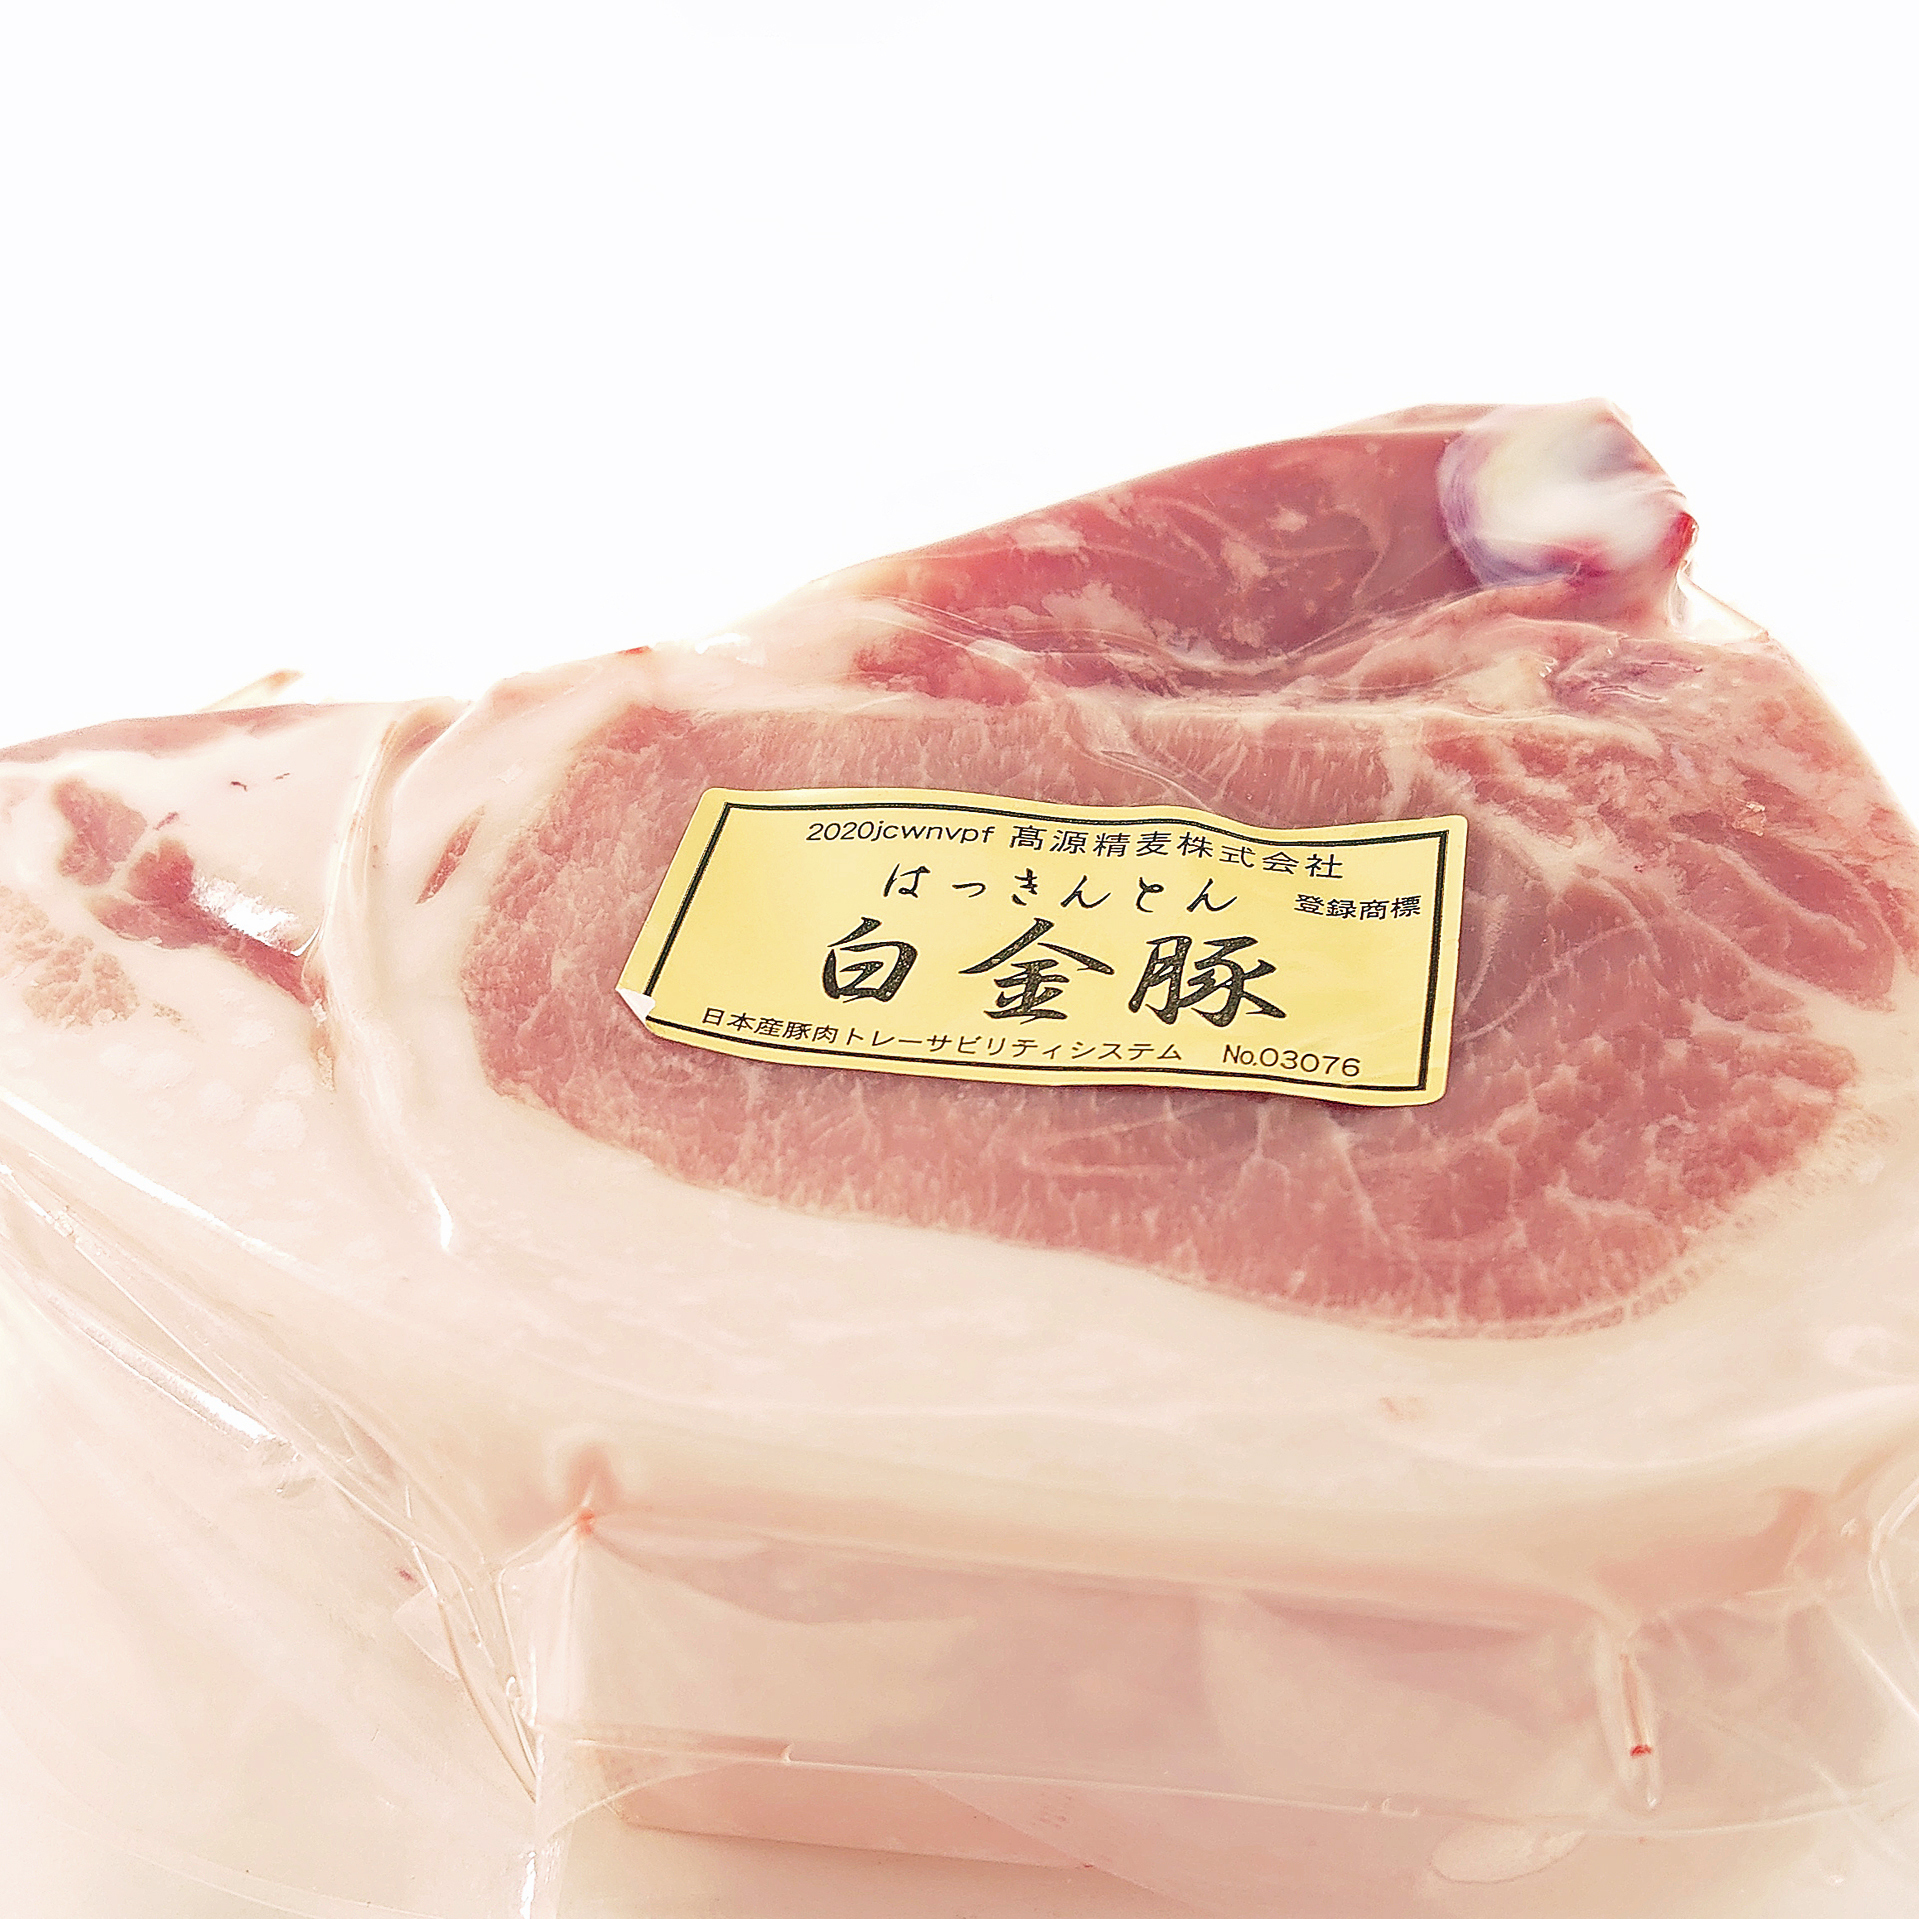 [冷凍]肉の王道Tボーン[白金豚]1枚300〜450g 冷凍 Tボーン(300〜400g)1枚(真空パック)